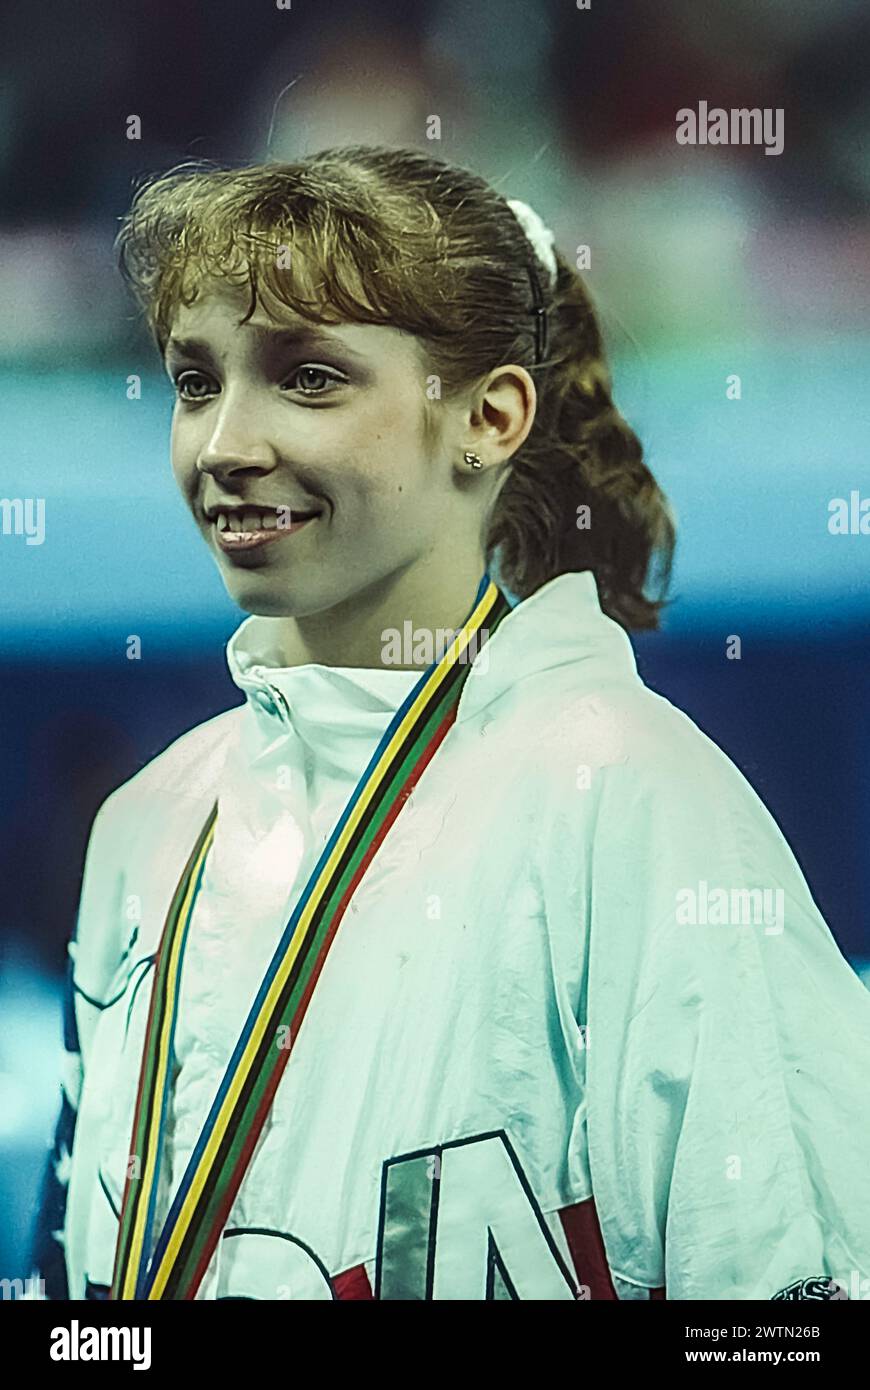 Kim Zmeskal (États-Unis) en compétition dans l'équipe artistique féminine de gymnastique générale aux Jeux Olympiques d'été de 1992. Banque D'Images